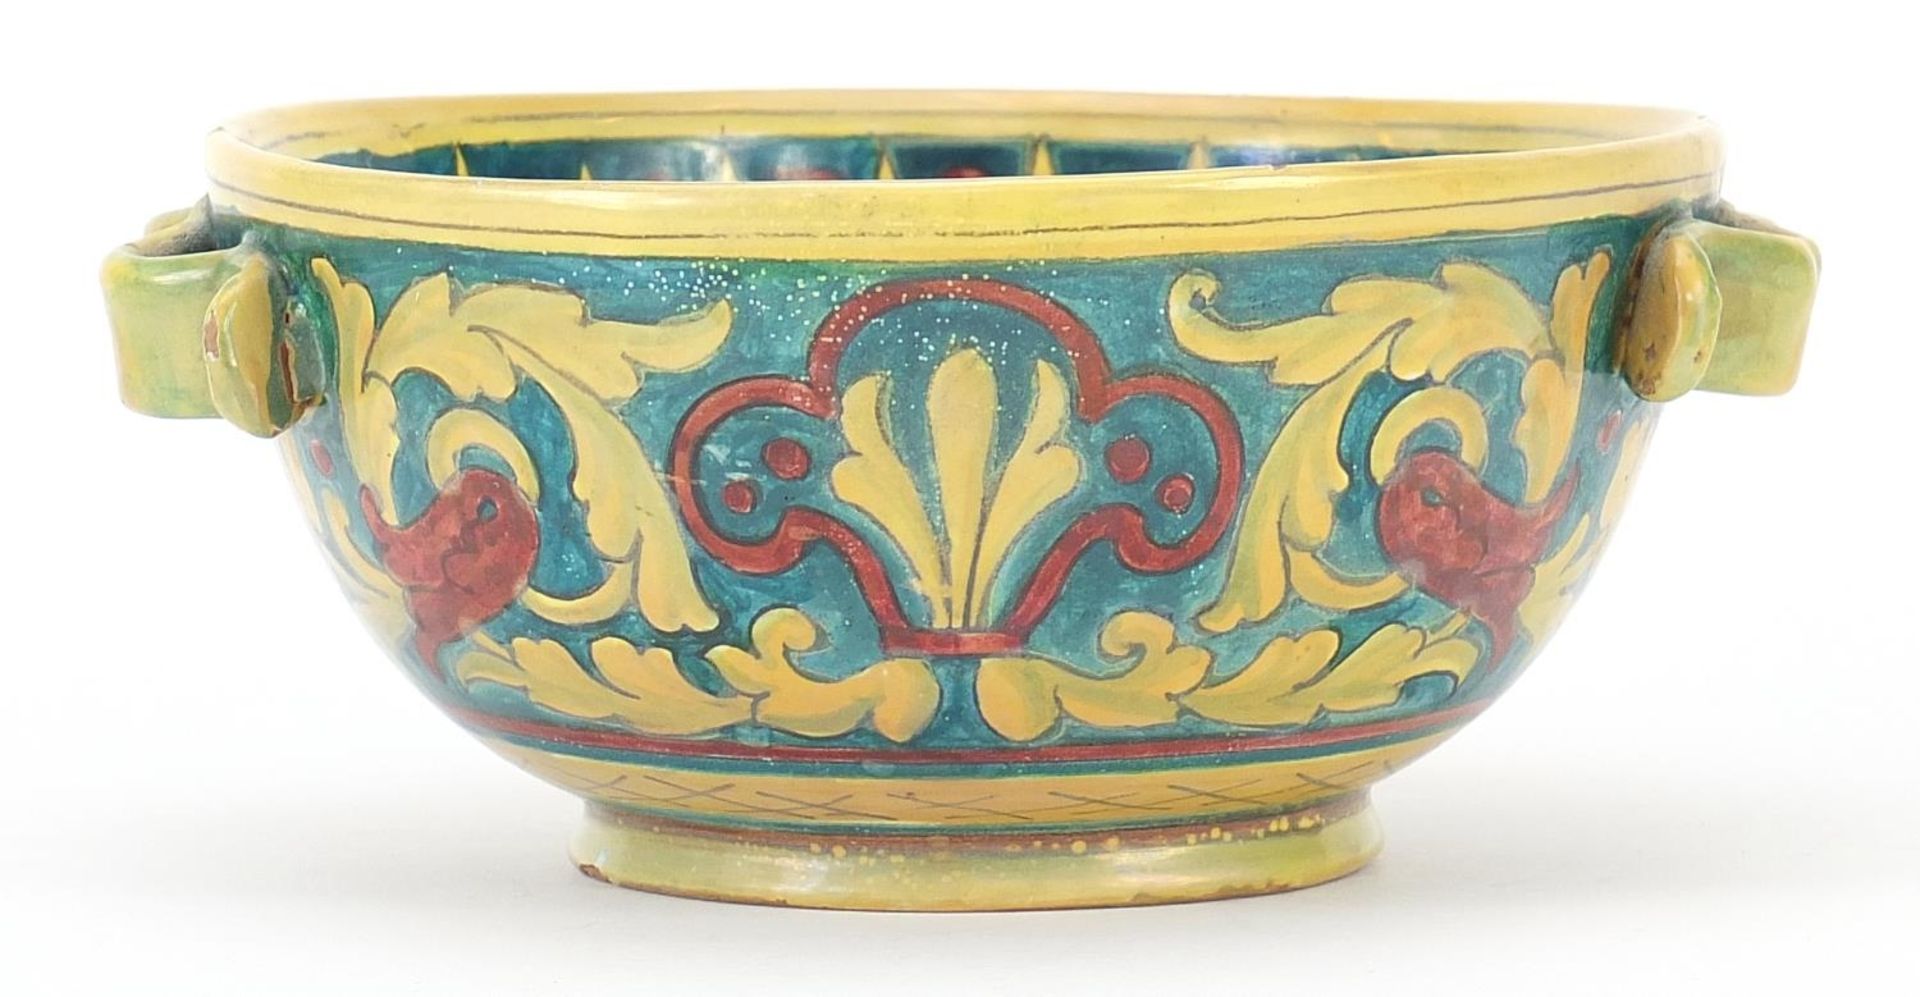 Italian lustre bowl in the style of William de Morgan, 18.5cm in diameter